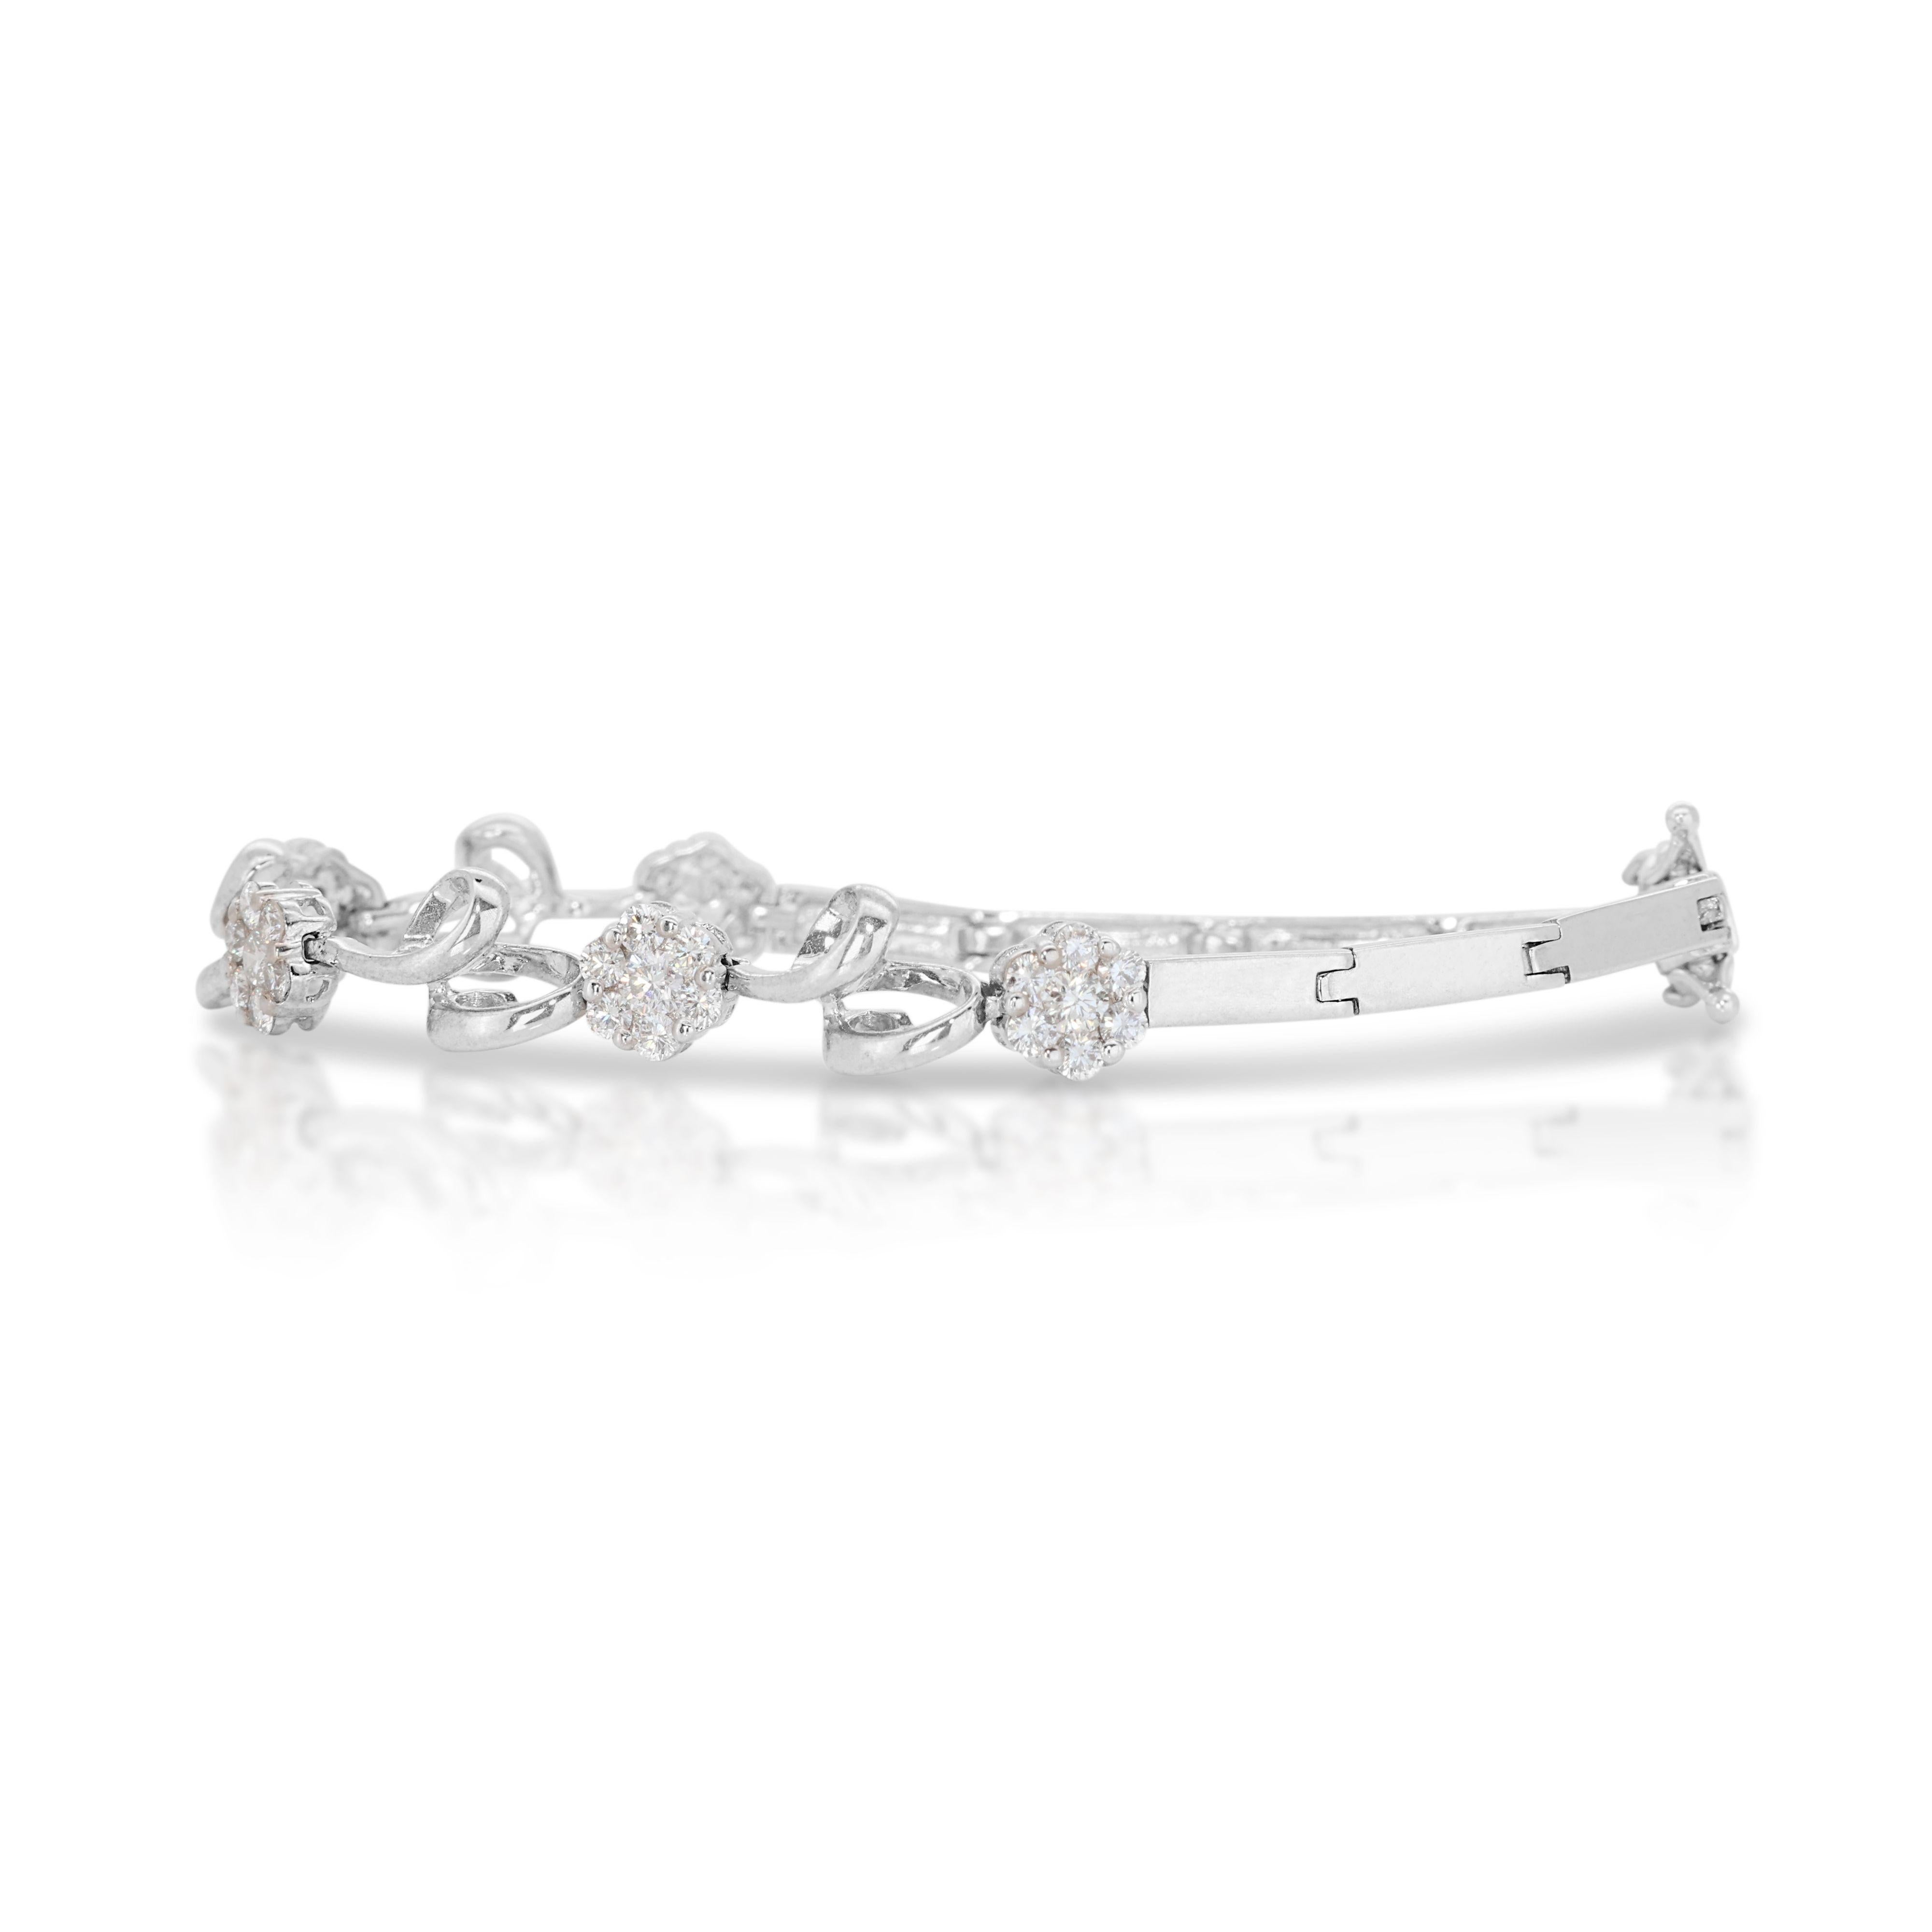 Taille brillant Magnifique bracelet en or blanc 18 carats avec diamants naturels de 0,70 carat